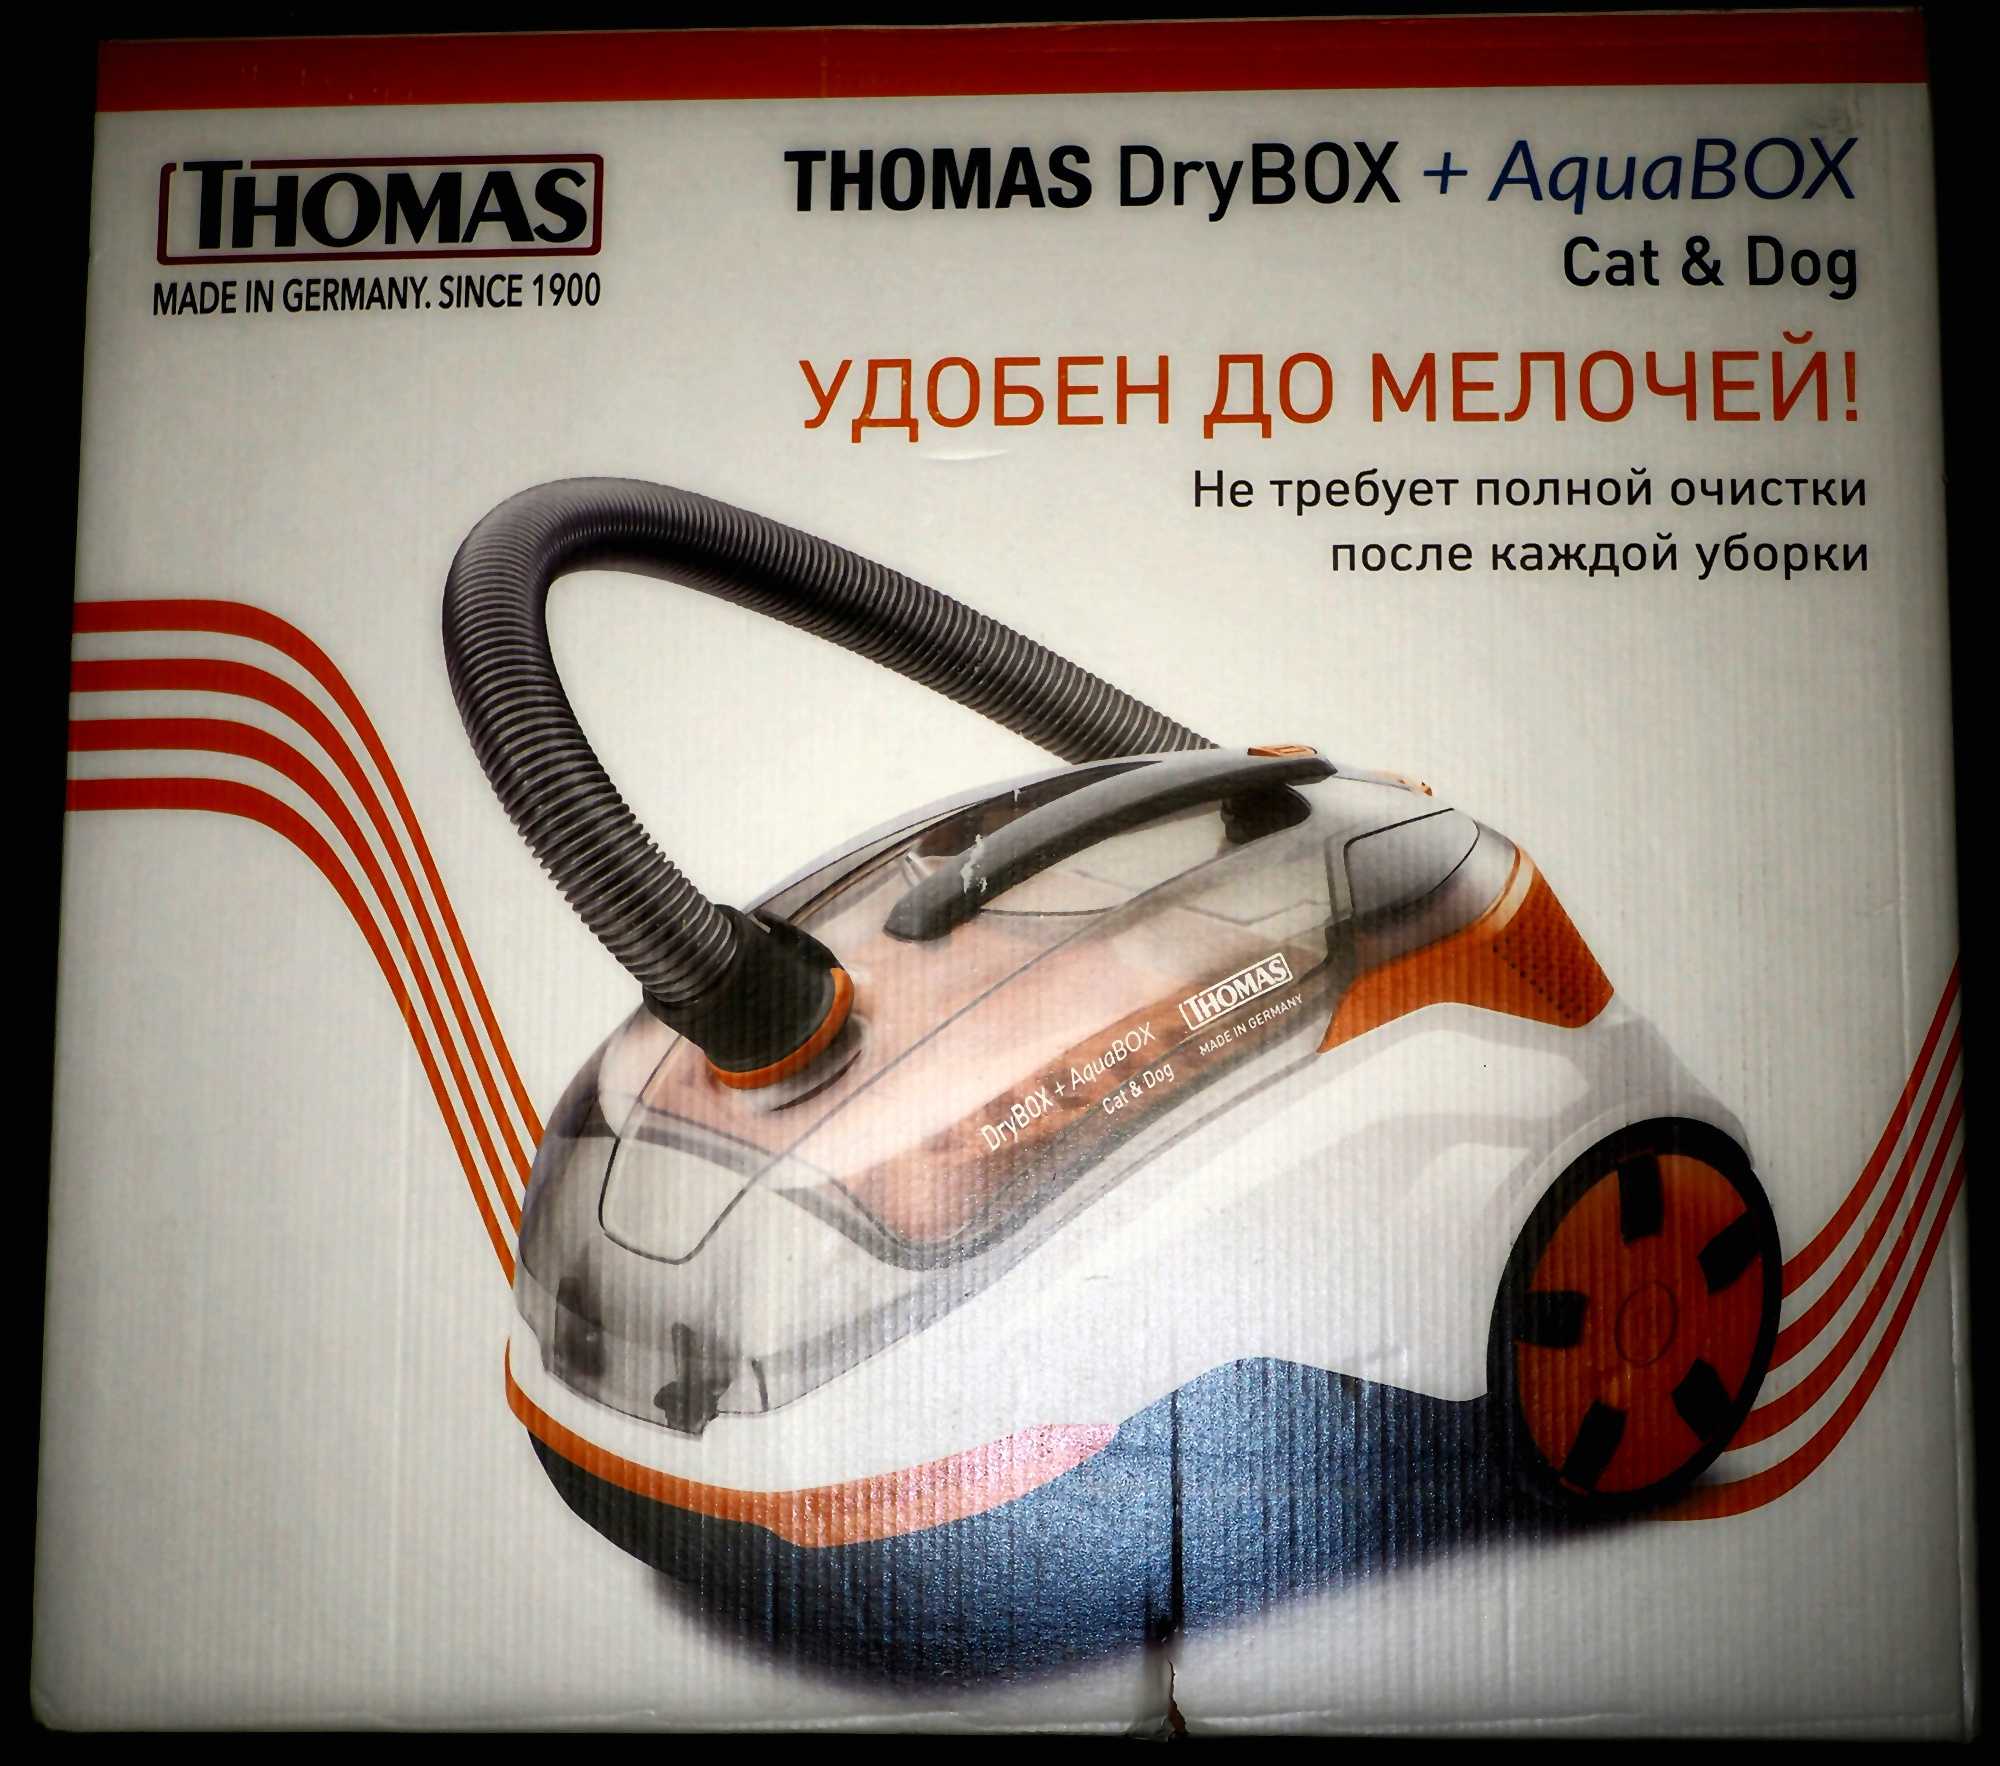 Пылесос thomas ( томас) drybox с системой фракционного разделения пыли: характеристики, отзывы, где купить